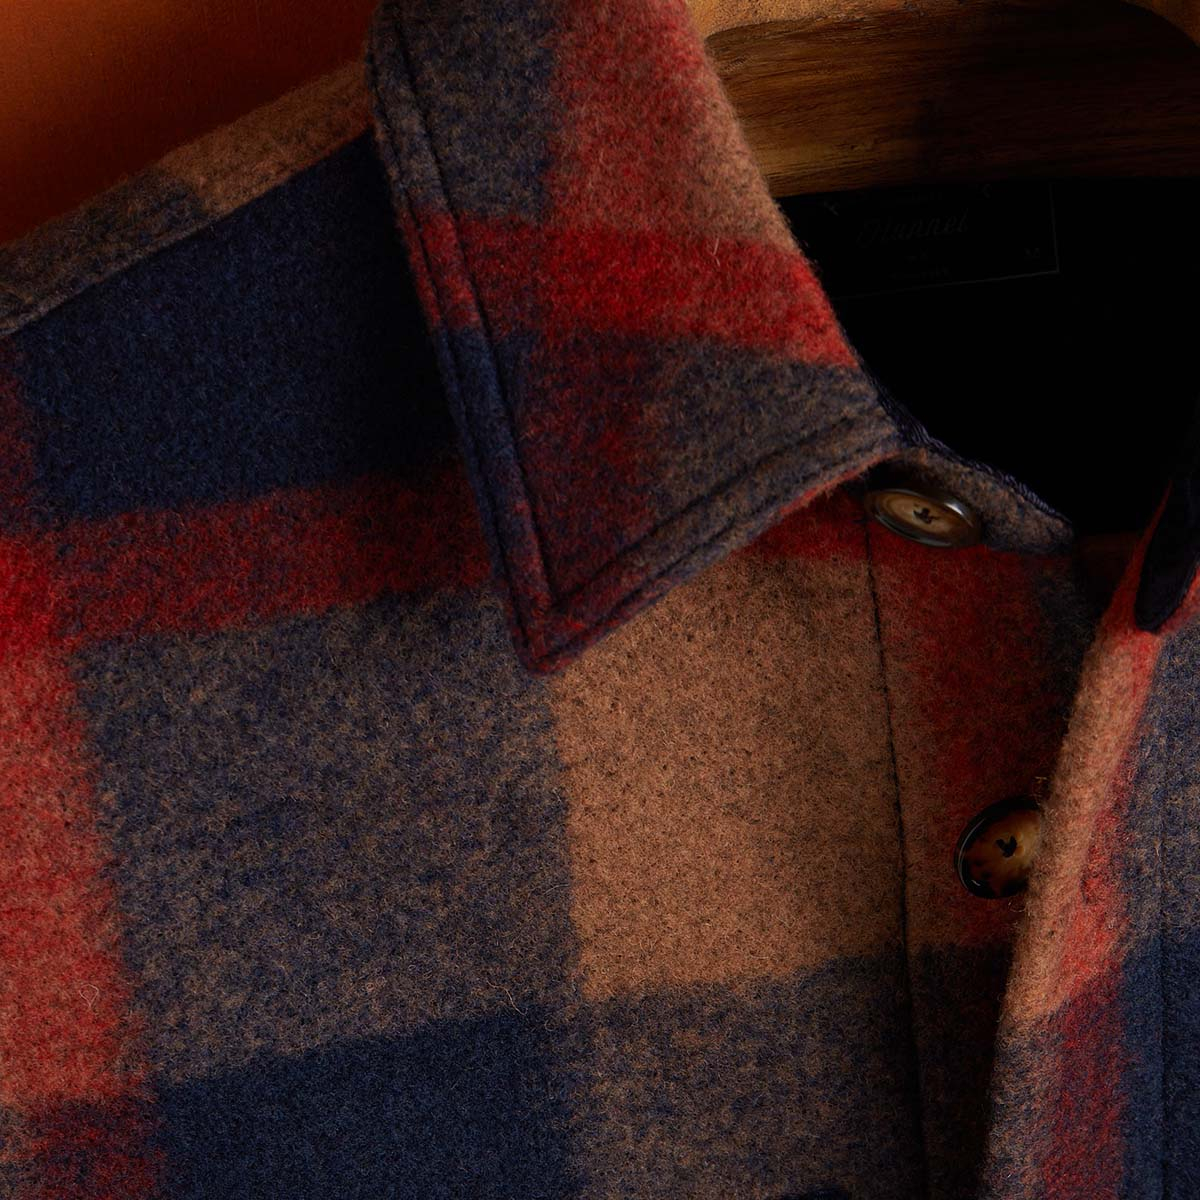 Portuguese Flannel Checked Brushed-Fleece Overshirt, hergestellt aus den feinsten exklusiven Stoffen